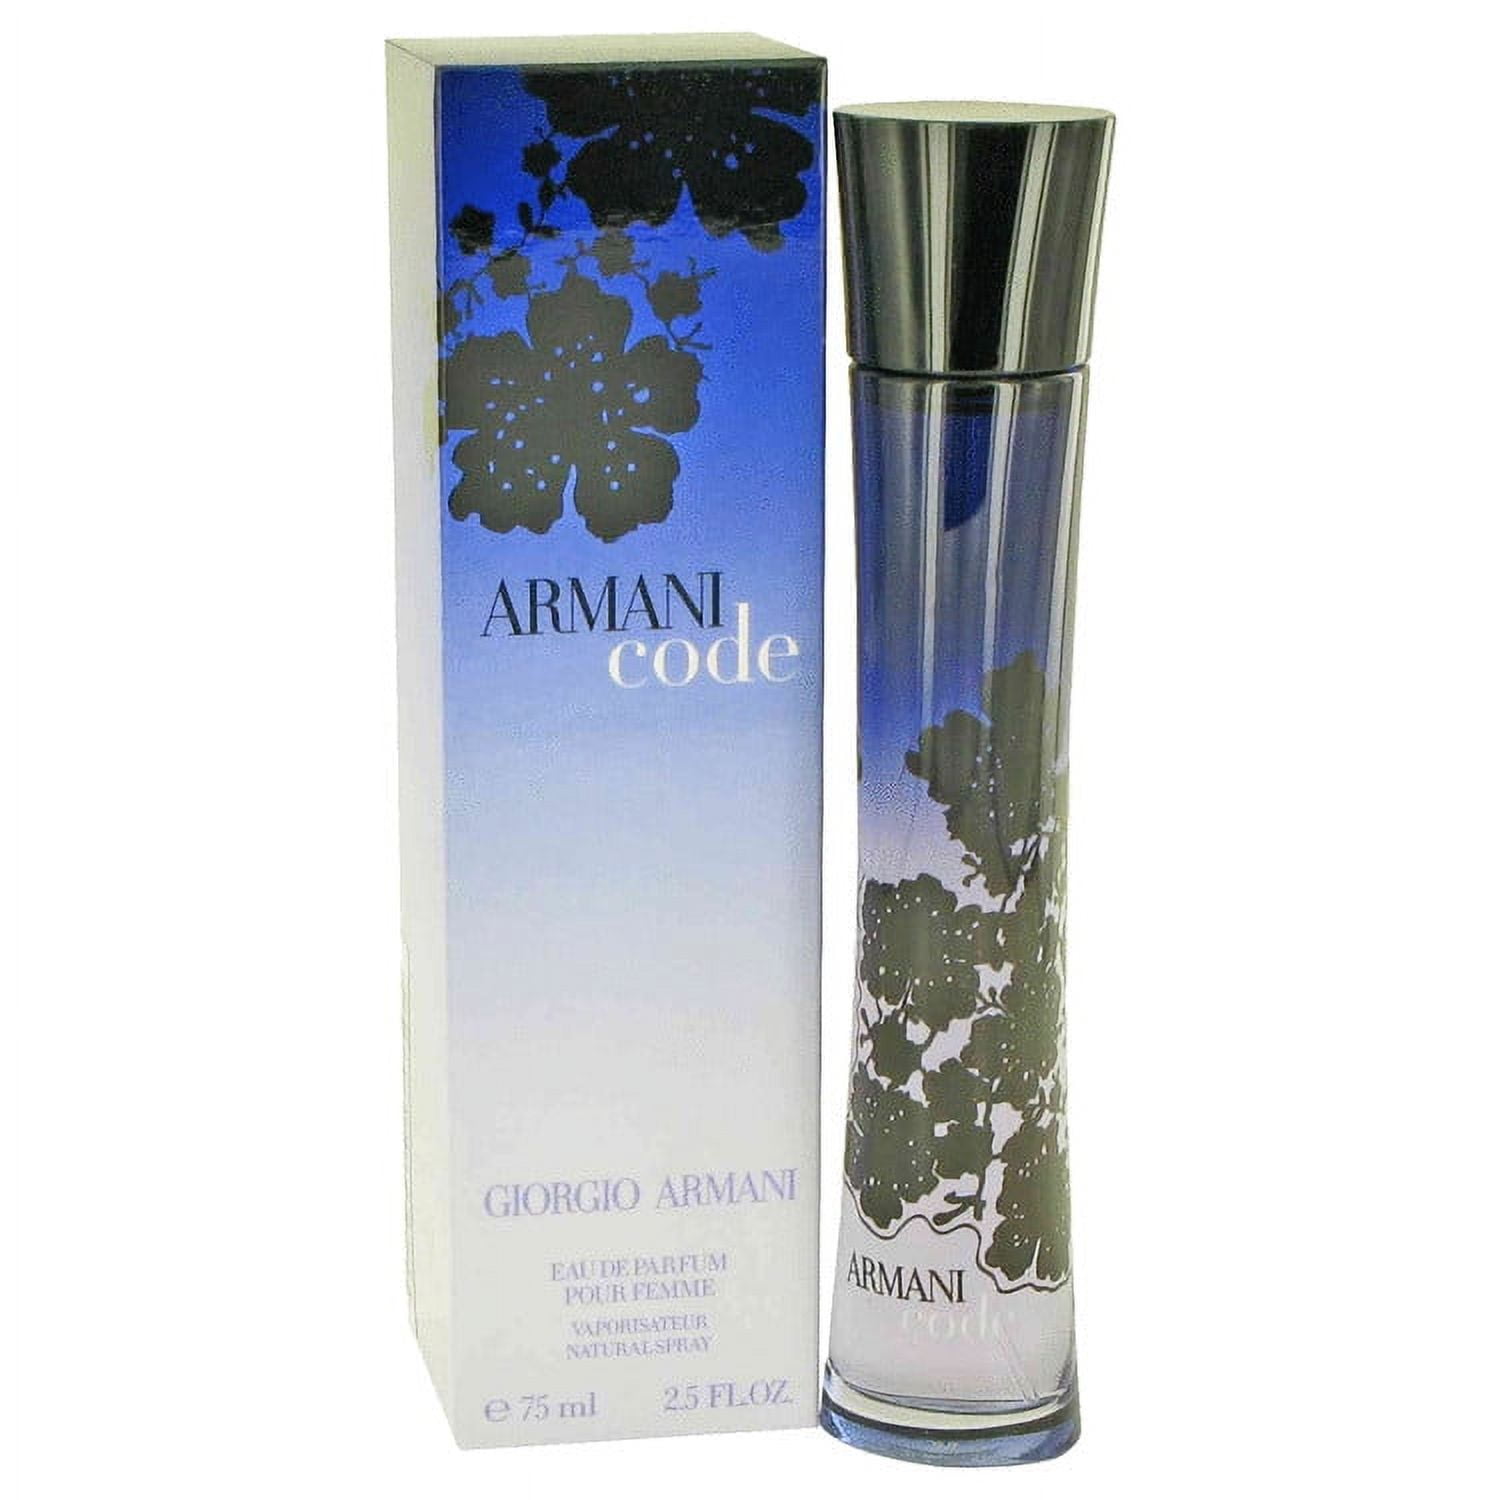 Armani woman. Giorgio Armani code 75 мл. Духи Giorgio Armani Armani code. Giorgio Armani Armani code Parfum, 75 ml. Giorgio Armani - code for women 75 ml..